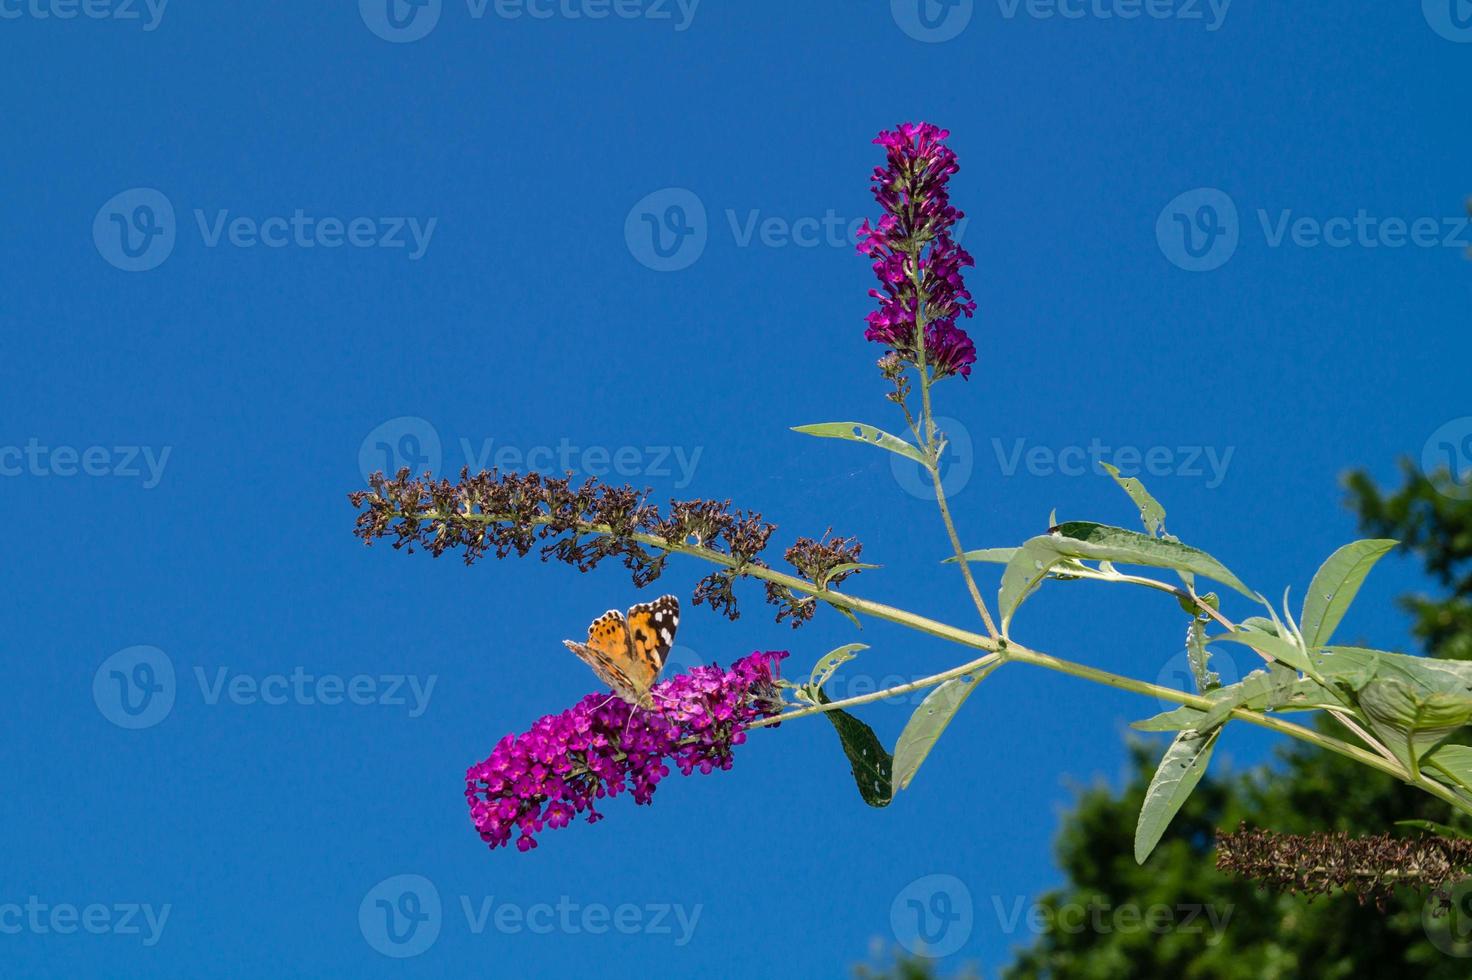 Buddleja davidii the Butterfly bush photo